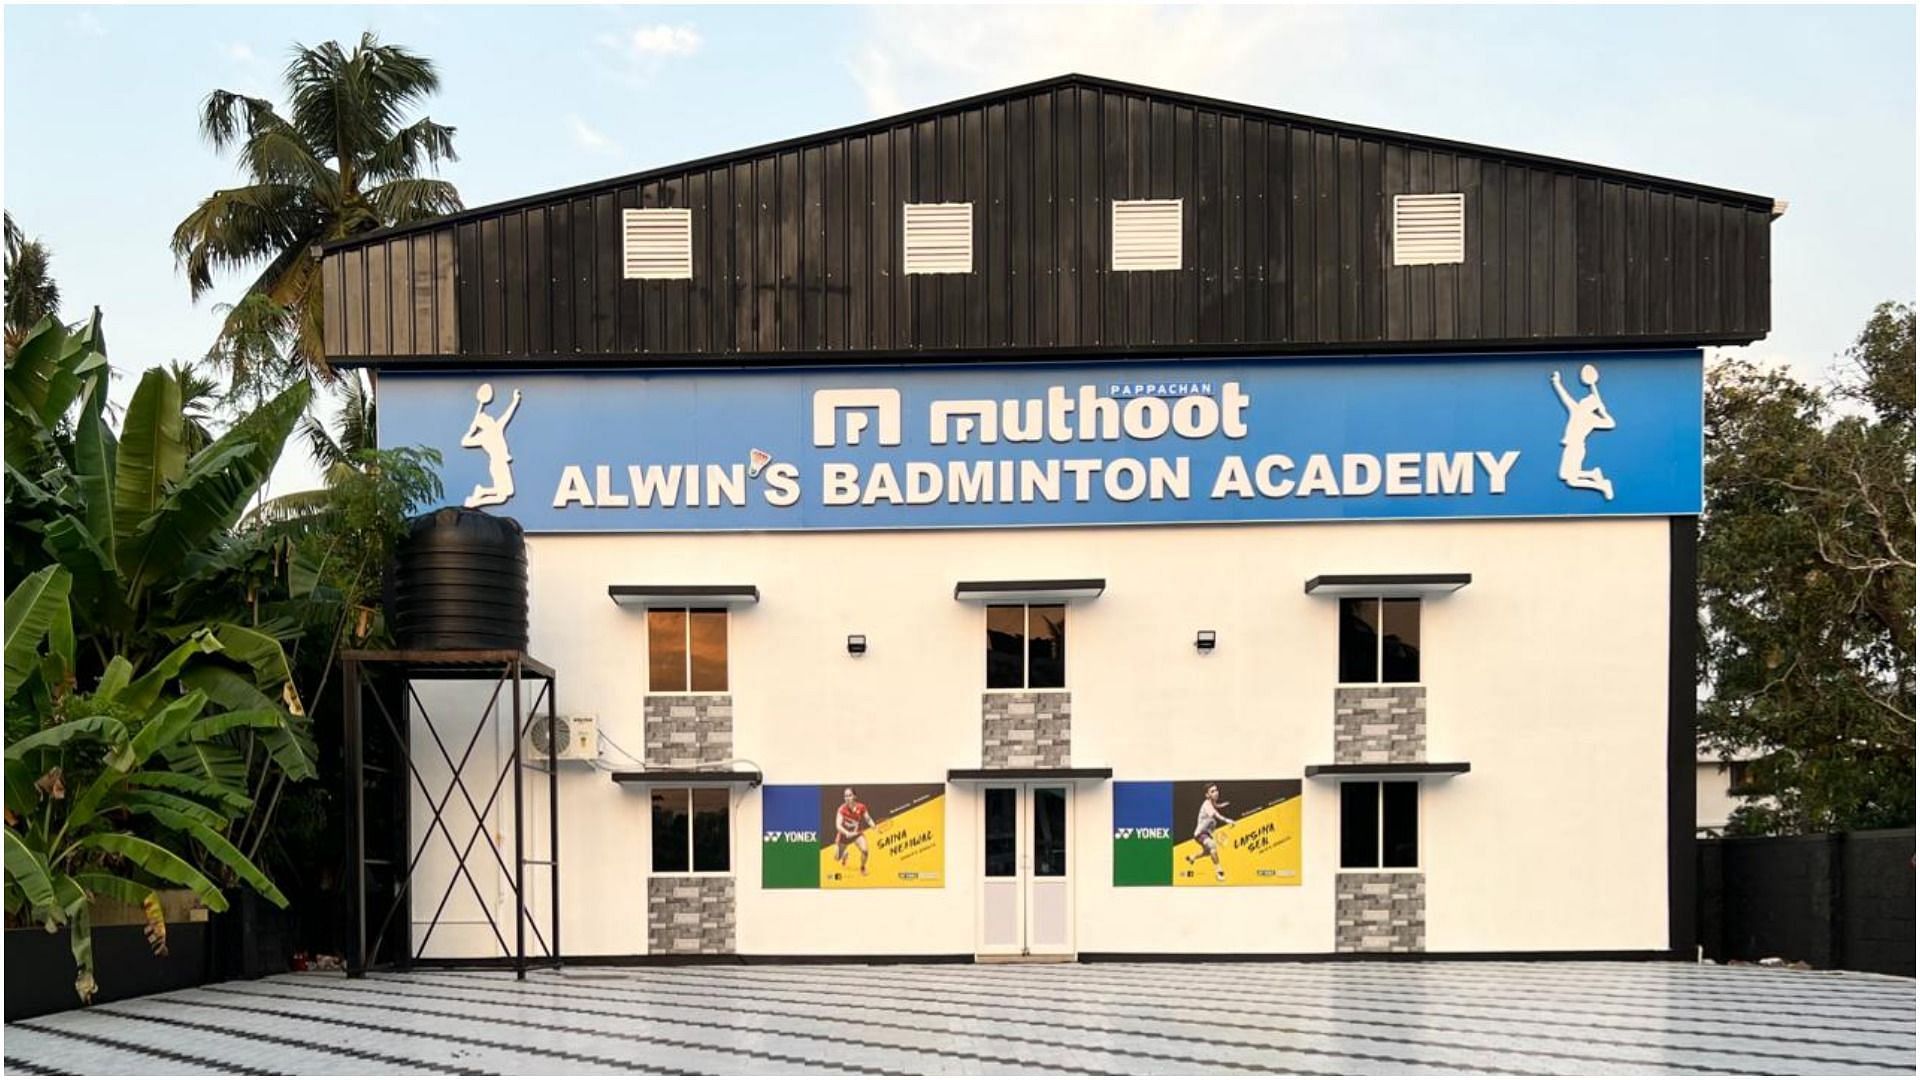 Muhoot Pappachan Group, junto con Alwin Francis, crea una academia de bádminton en Kochi